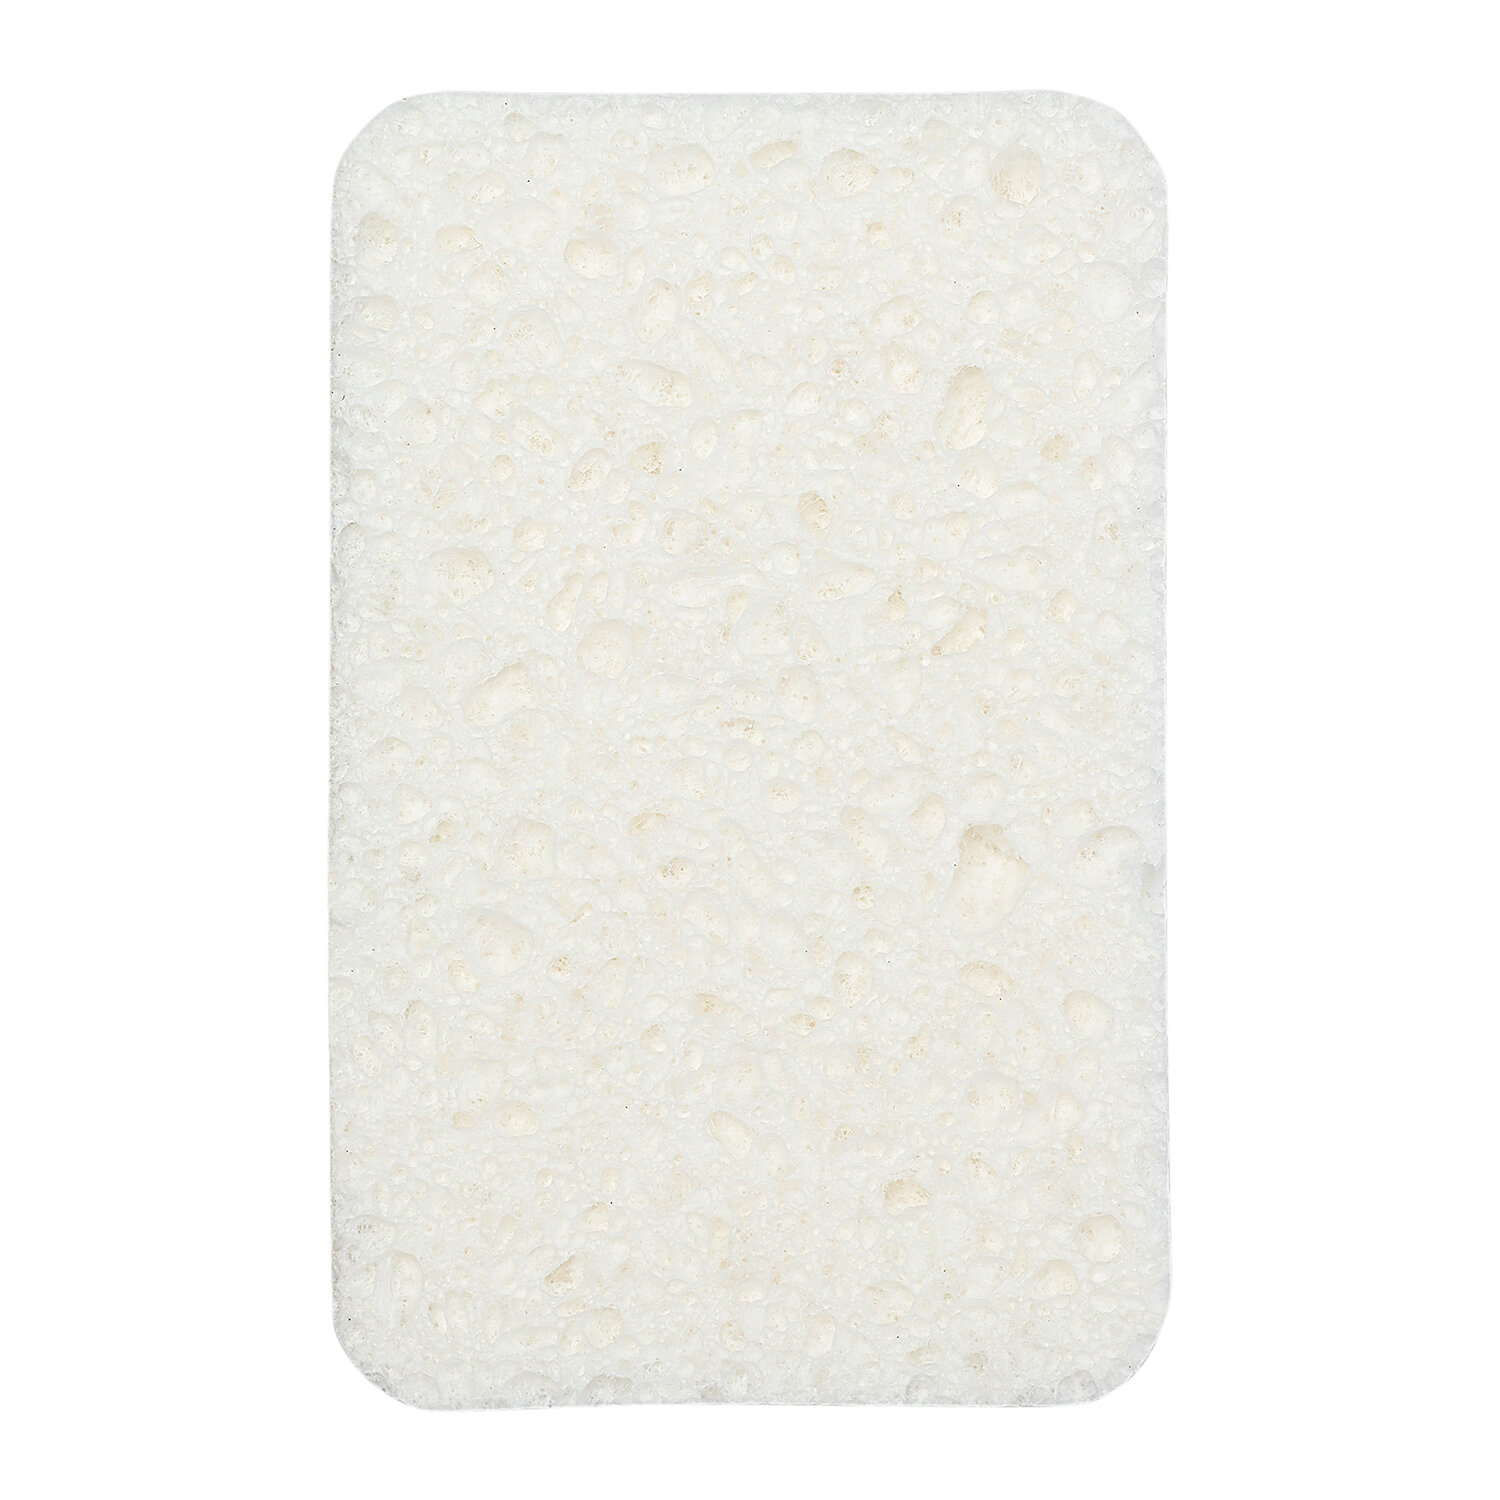 Губки для мытья посуды из целлюлозы и кокосового волокна 6 шт Eco Sponge Smart Solutions SS0000101